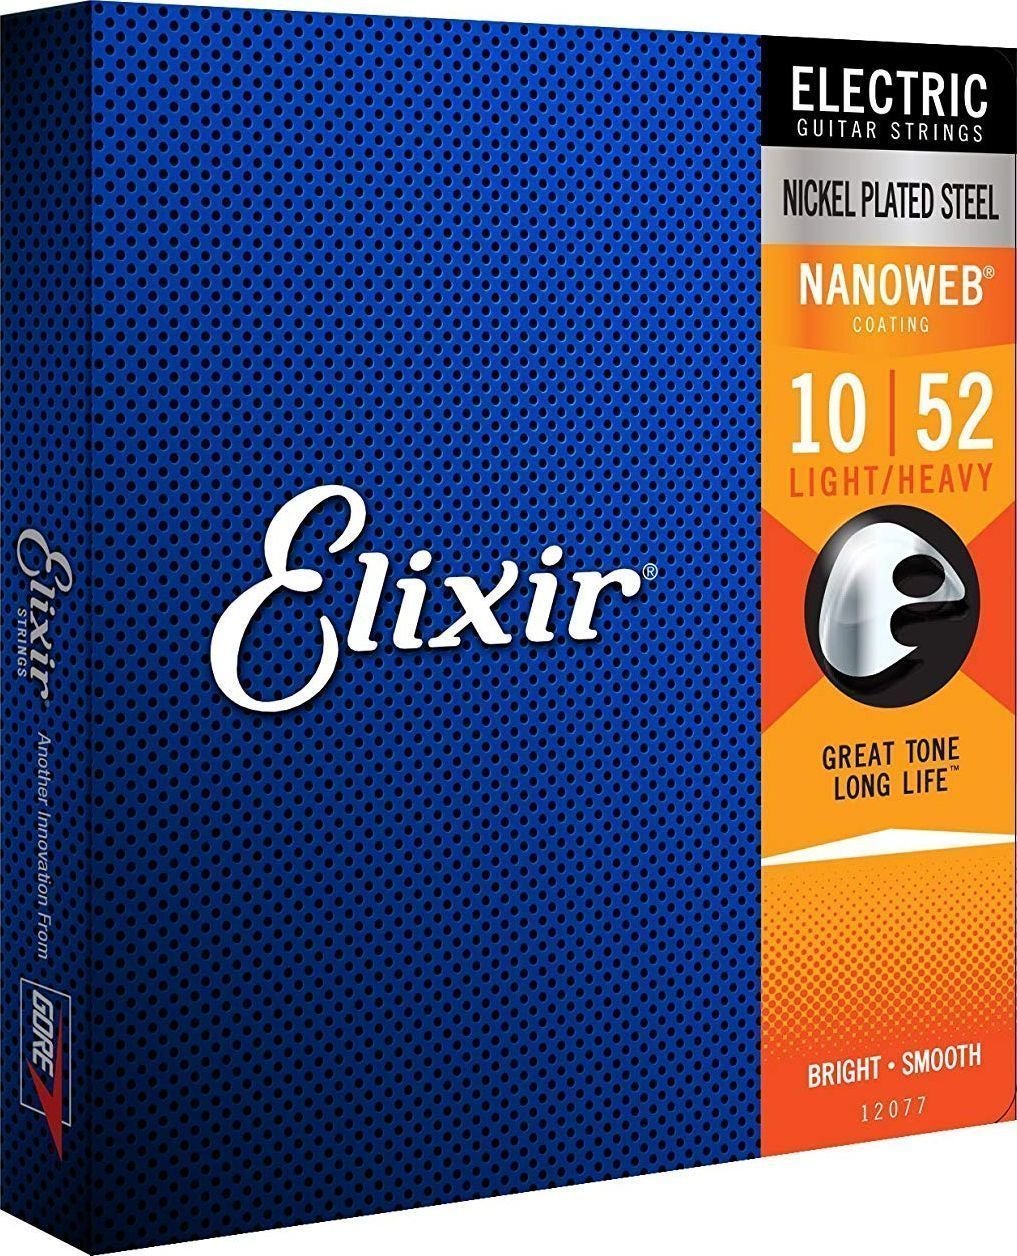 E-guitar strings Elixir 12077 Nanoweb 10-52